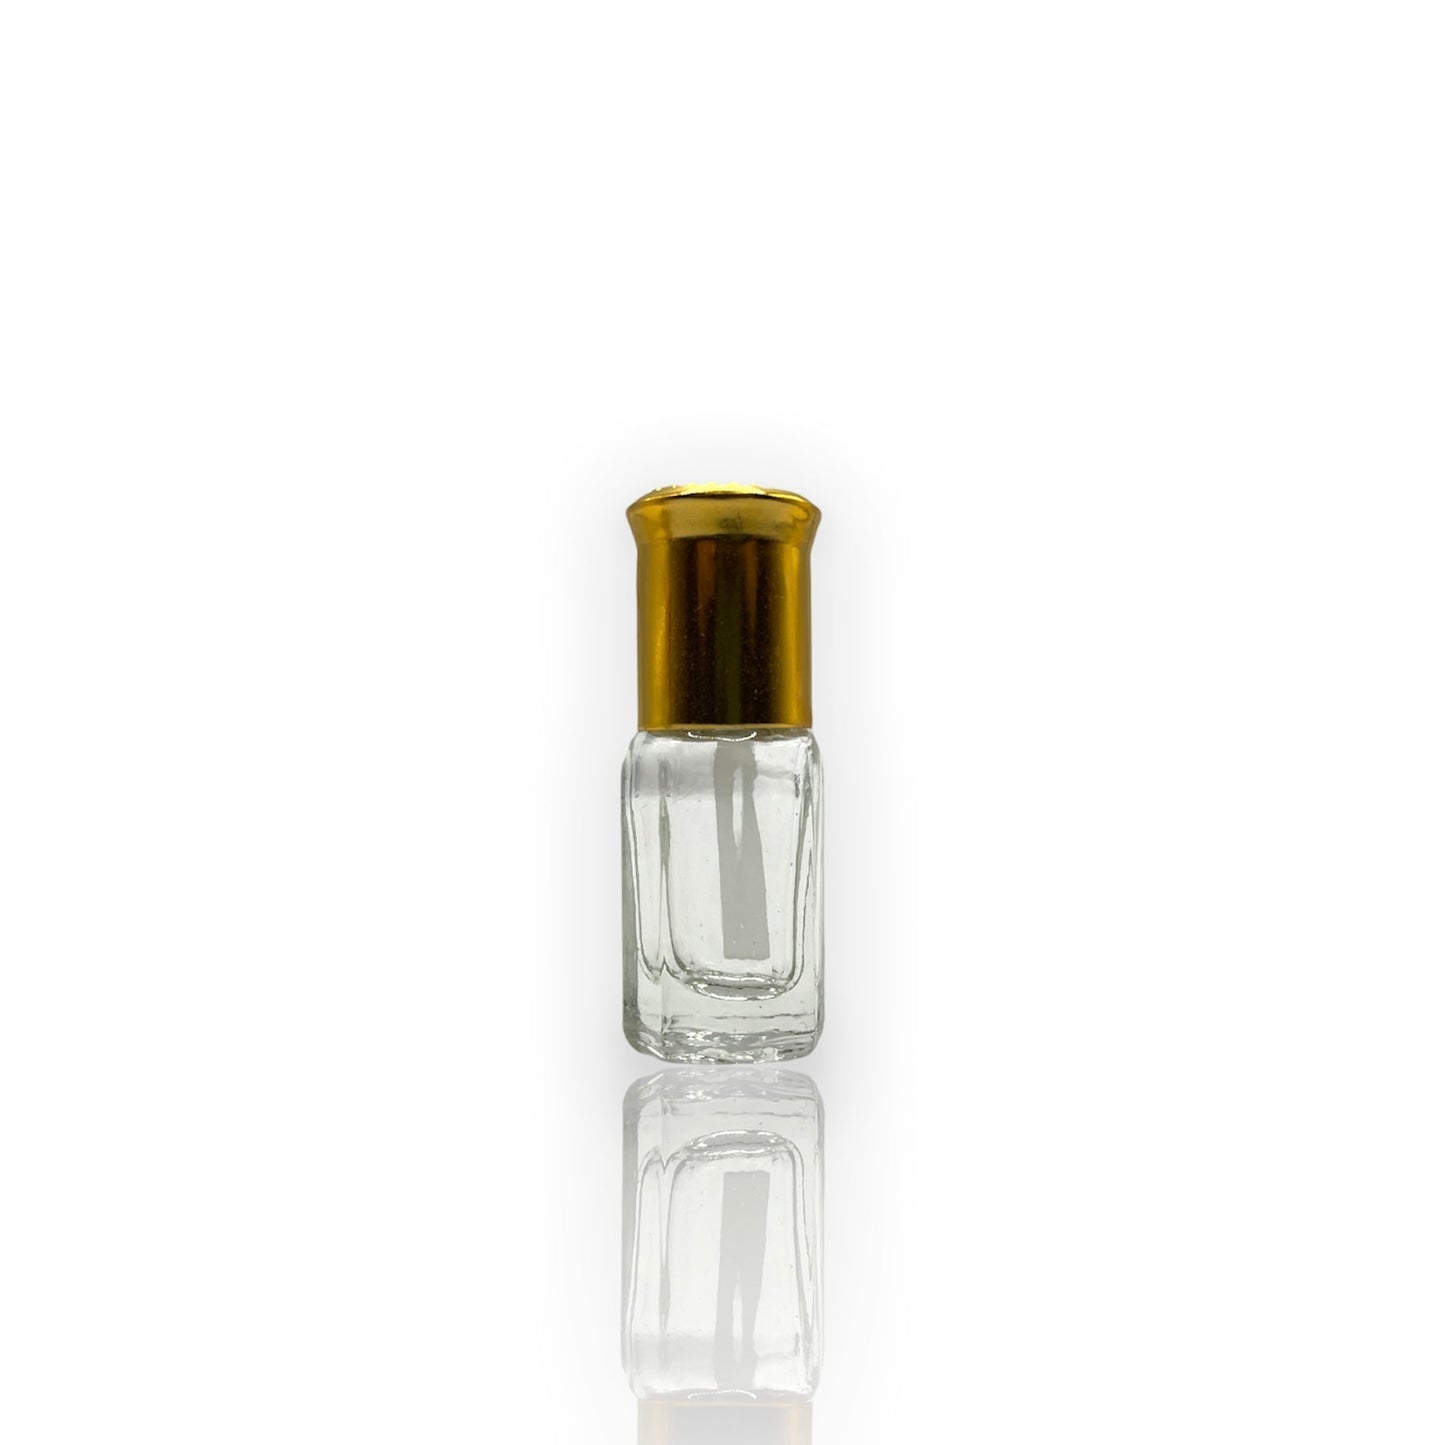 M-05 Öl Parfüm *Inspiriert Von Hugo Boss